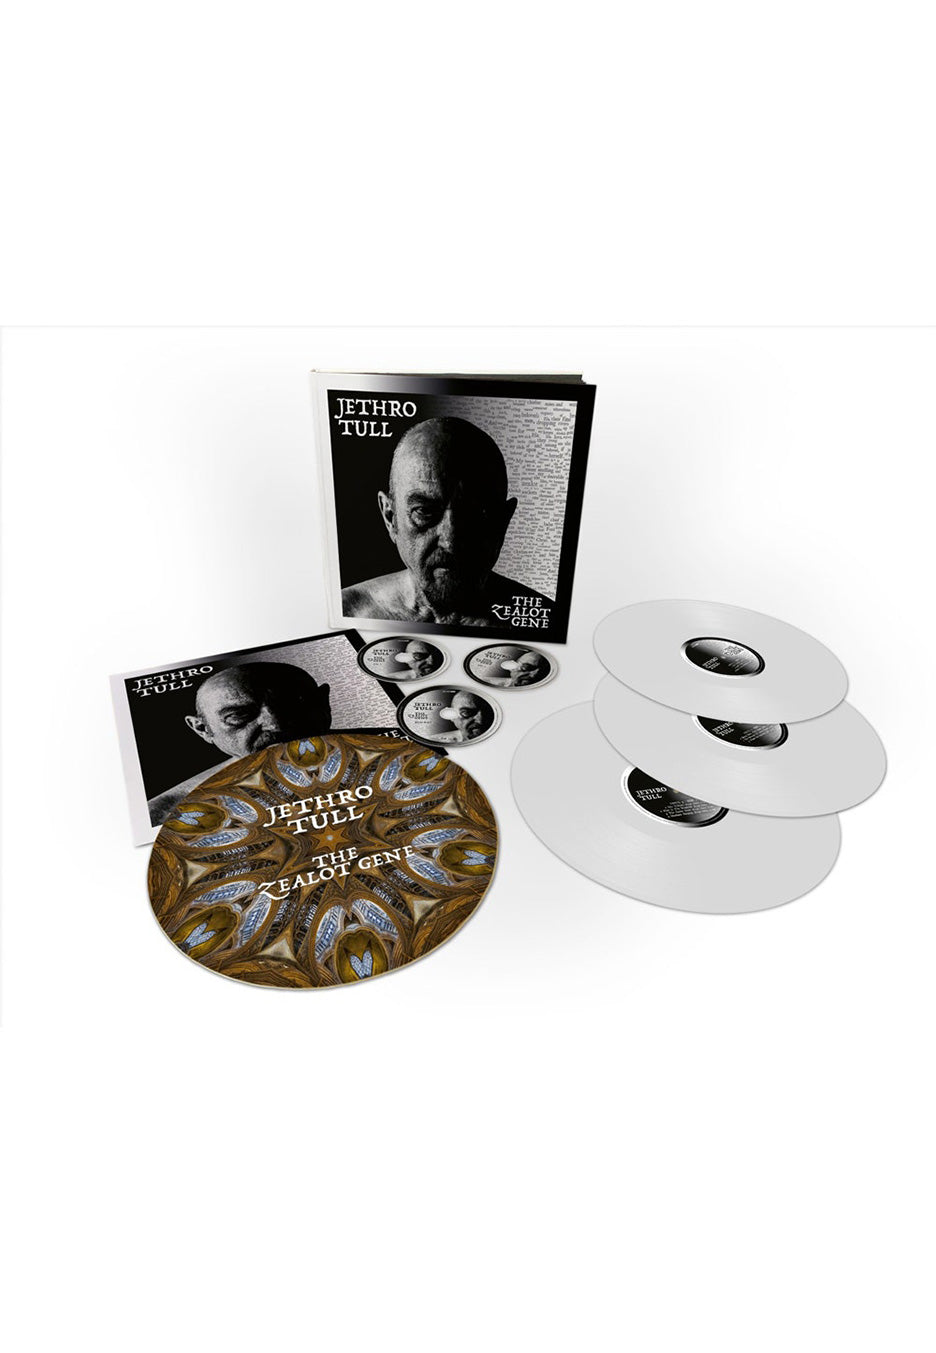 Jethro Tull - The Zealot Gene Deluxe Artbook - 3 Vinyl + 2 CD + Blu Ray